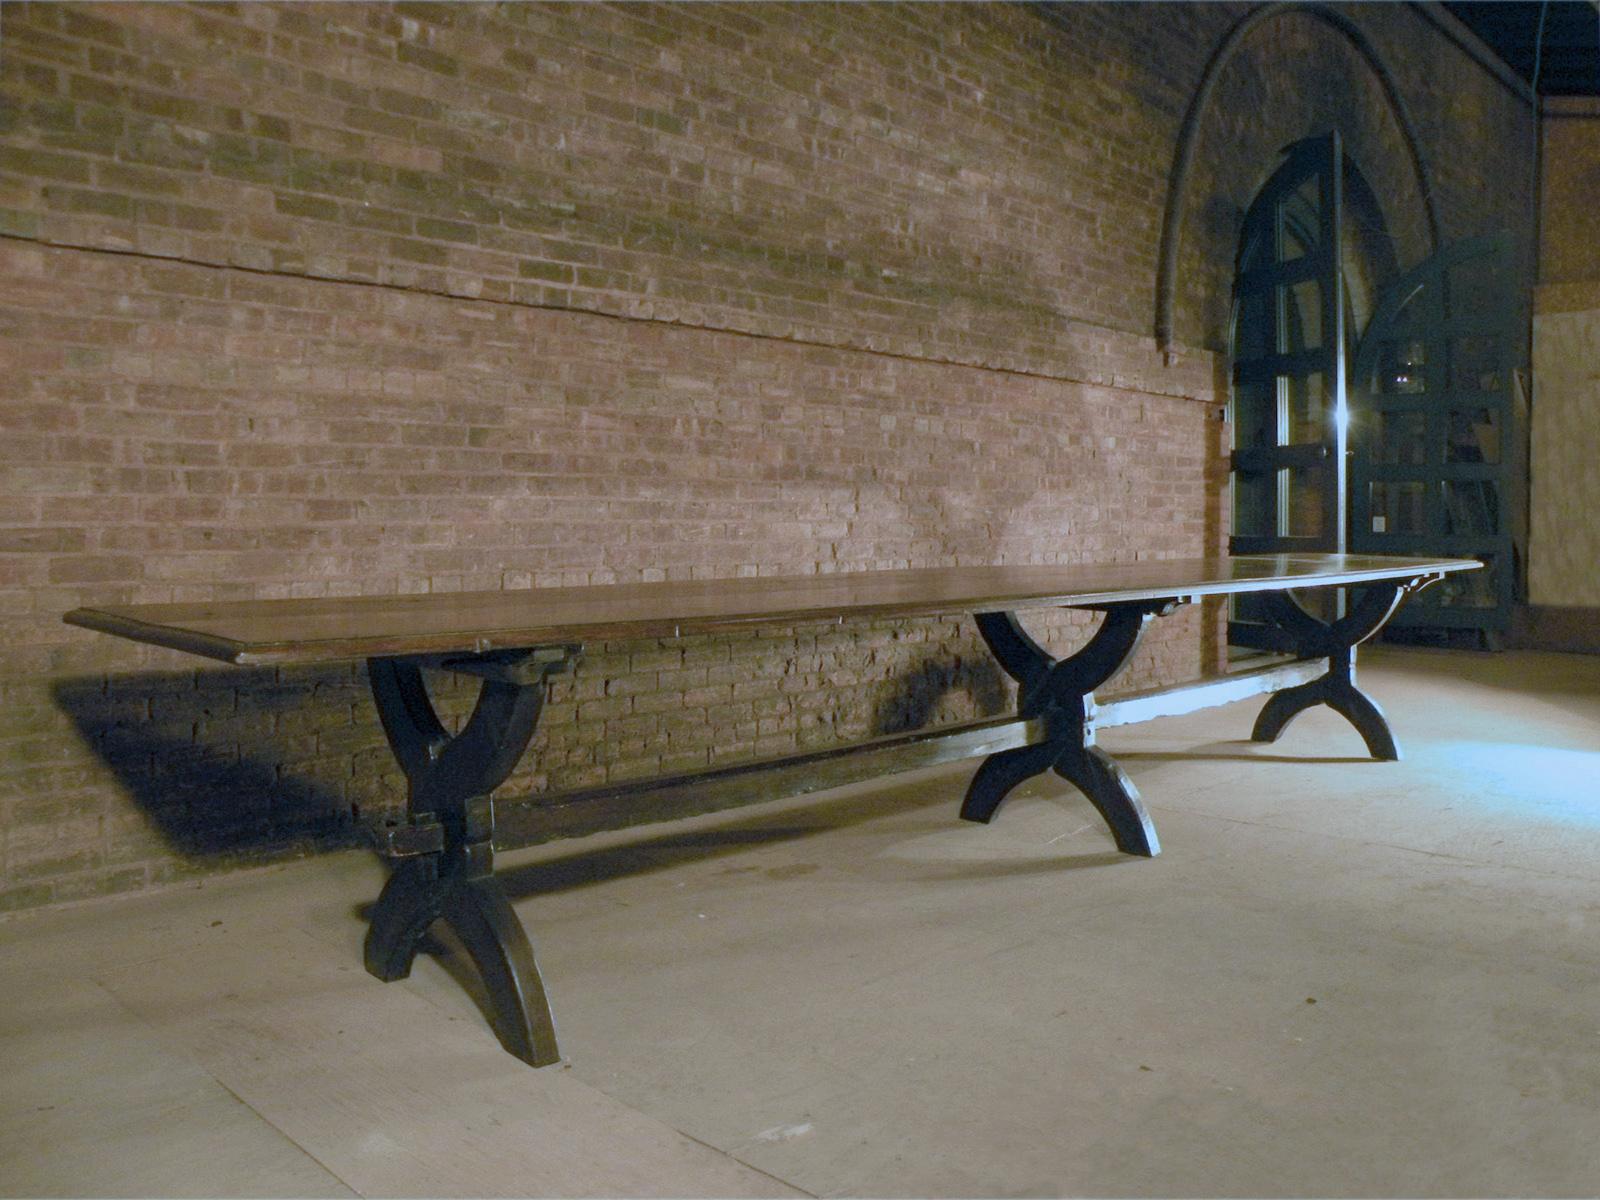 Superbe table à tréteaux en chêne de 16 pieds de long, élégante, longue et intemporelle.
La table peut être démontée : Le plateau se soulève et les trois supports en forme de X glissent du brancard.
Peut accueillir de 14 à 16 personnes.